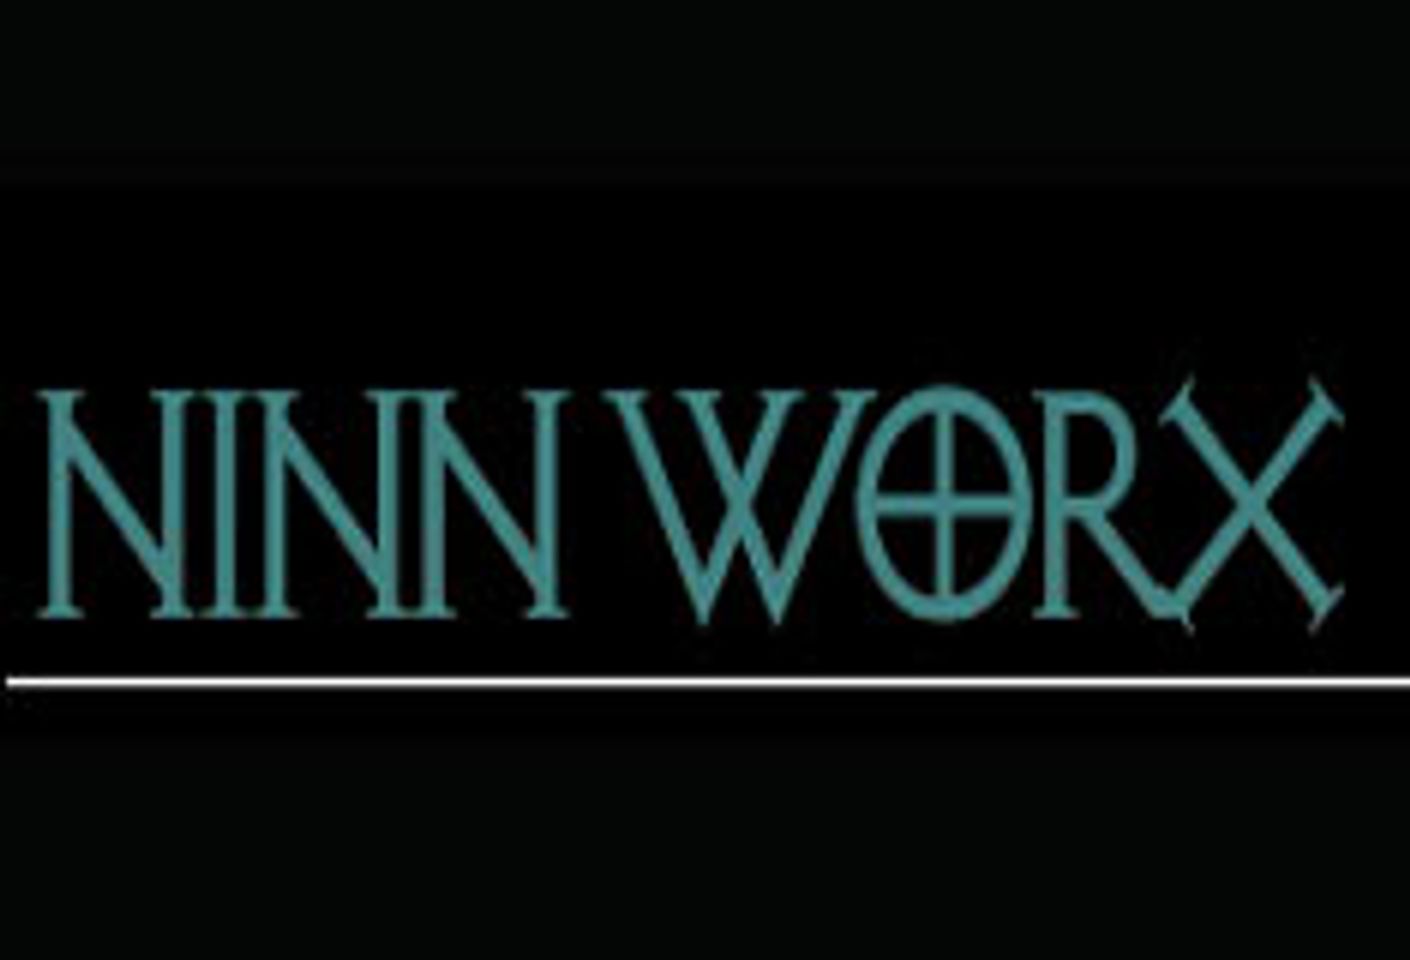 Ninn Worx to Co-Host Carmen Electra/ Dave Navarro Party at Hard Rock